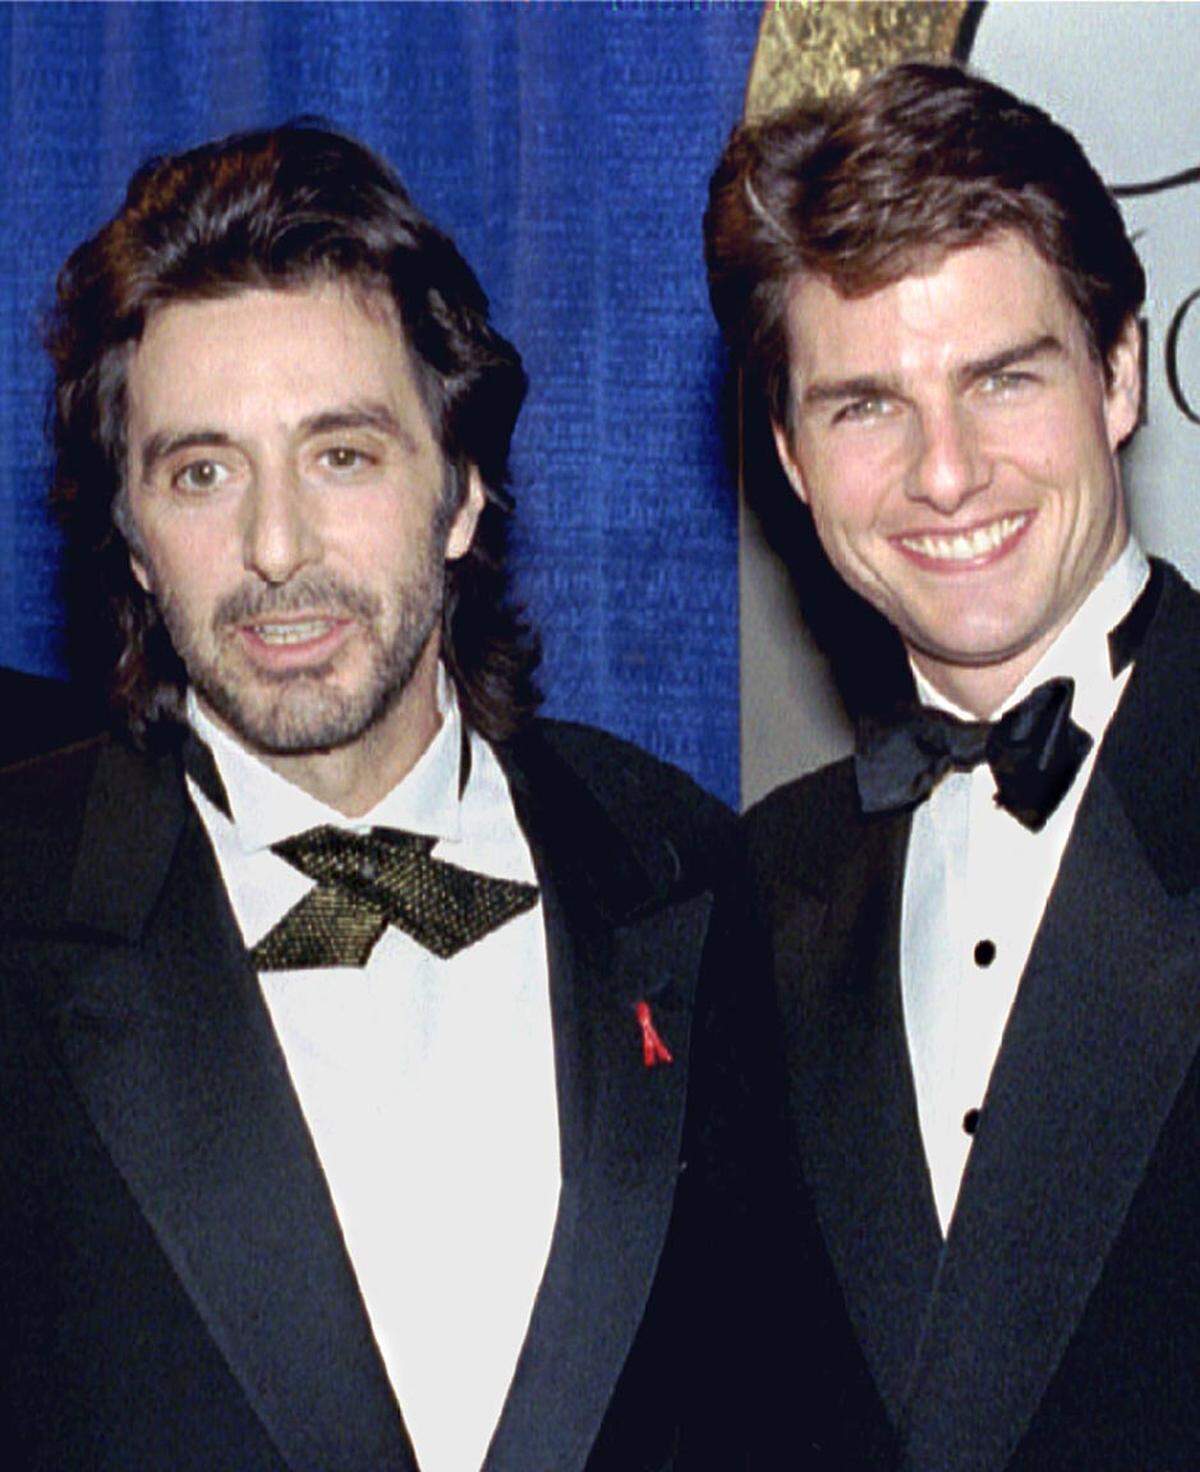 Große Ereignisse für Tom Cruise im Jahr 1990: Er ließ sich von seiner ersten Frau Mimi Rogers scheiden, lernte Nicole Kidman am Set von "Tage des Donners" kennen, heiratete sie und versprühte viel Sexappeal.